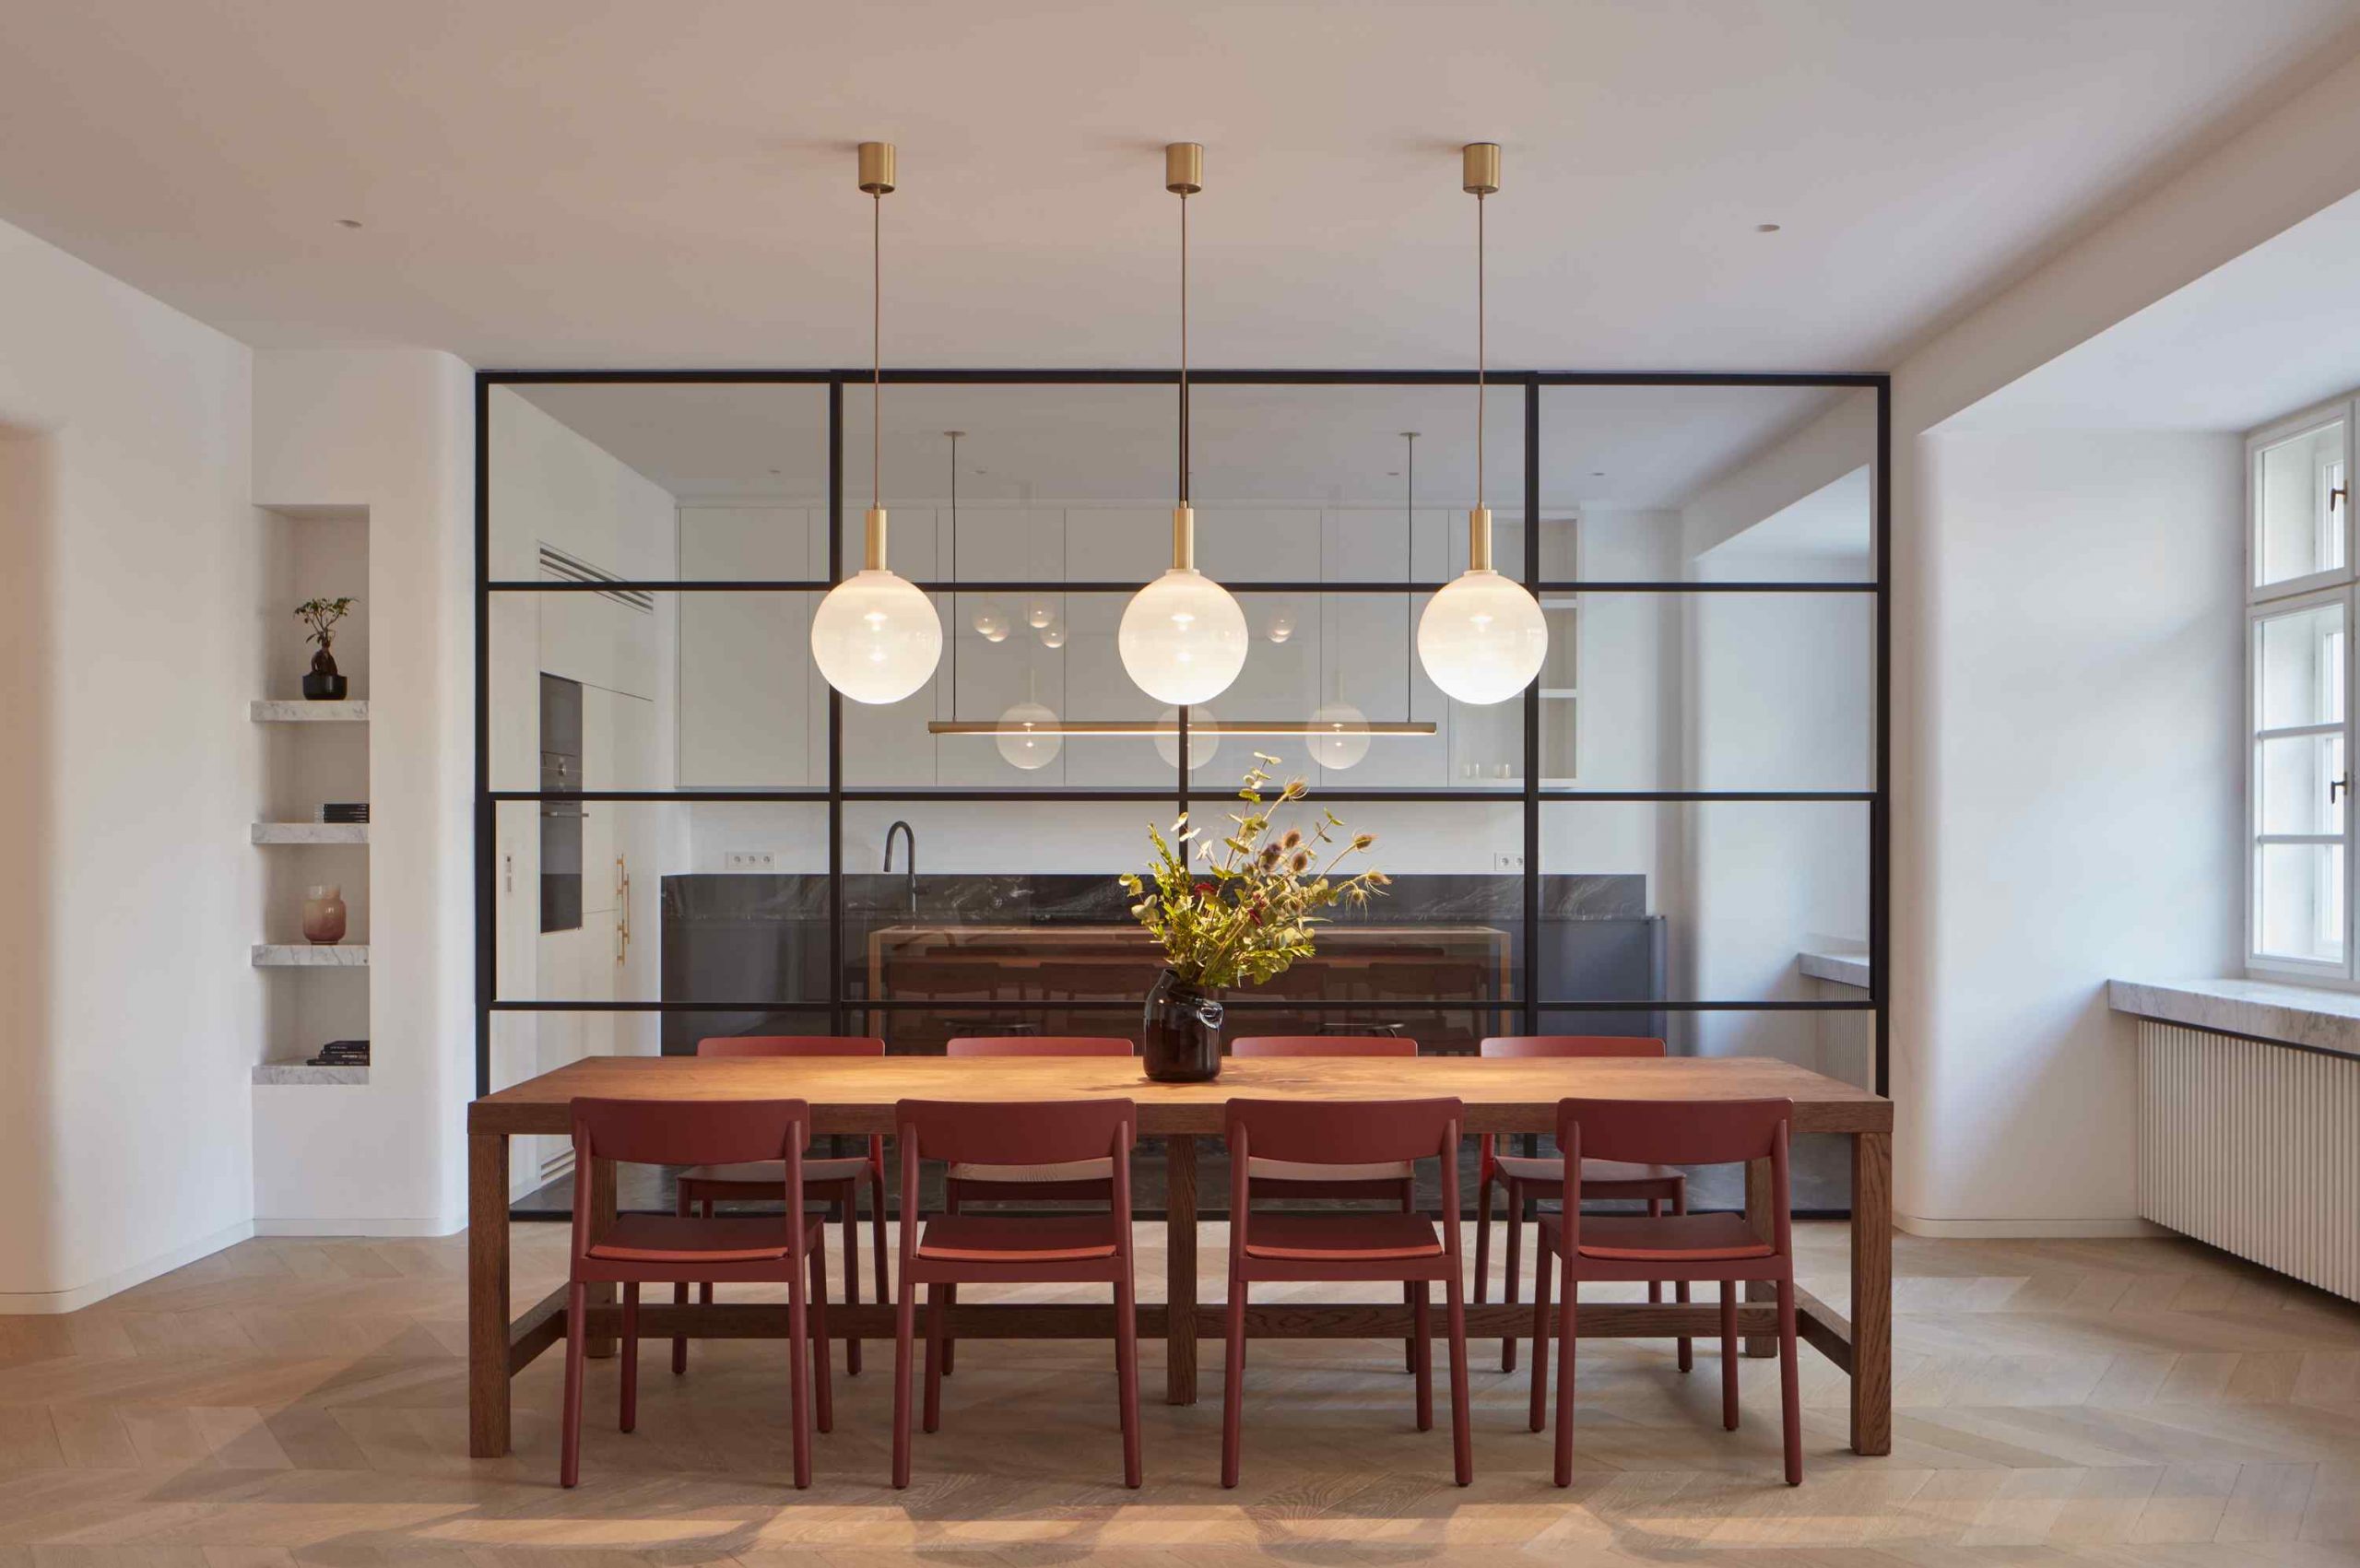 jedáleň s dreveným stolom a presklenou stenou a gulatymi lampami